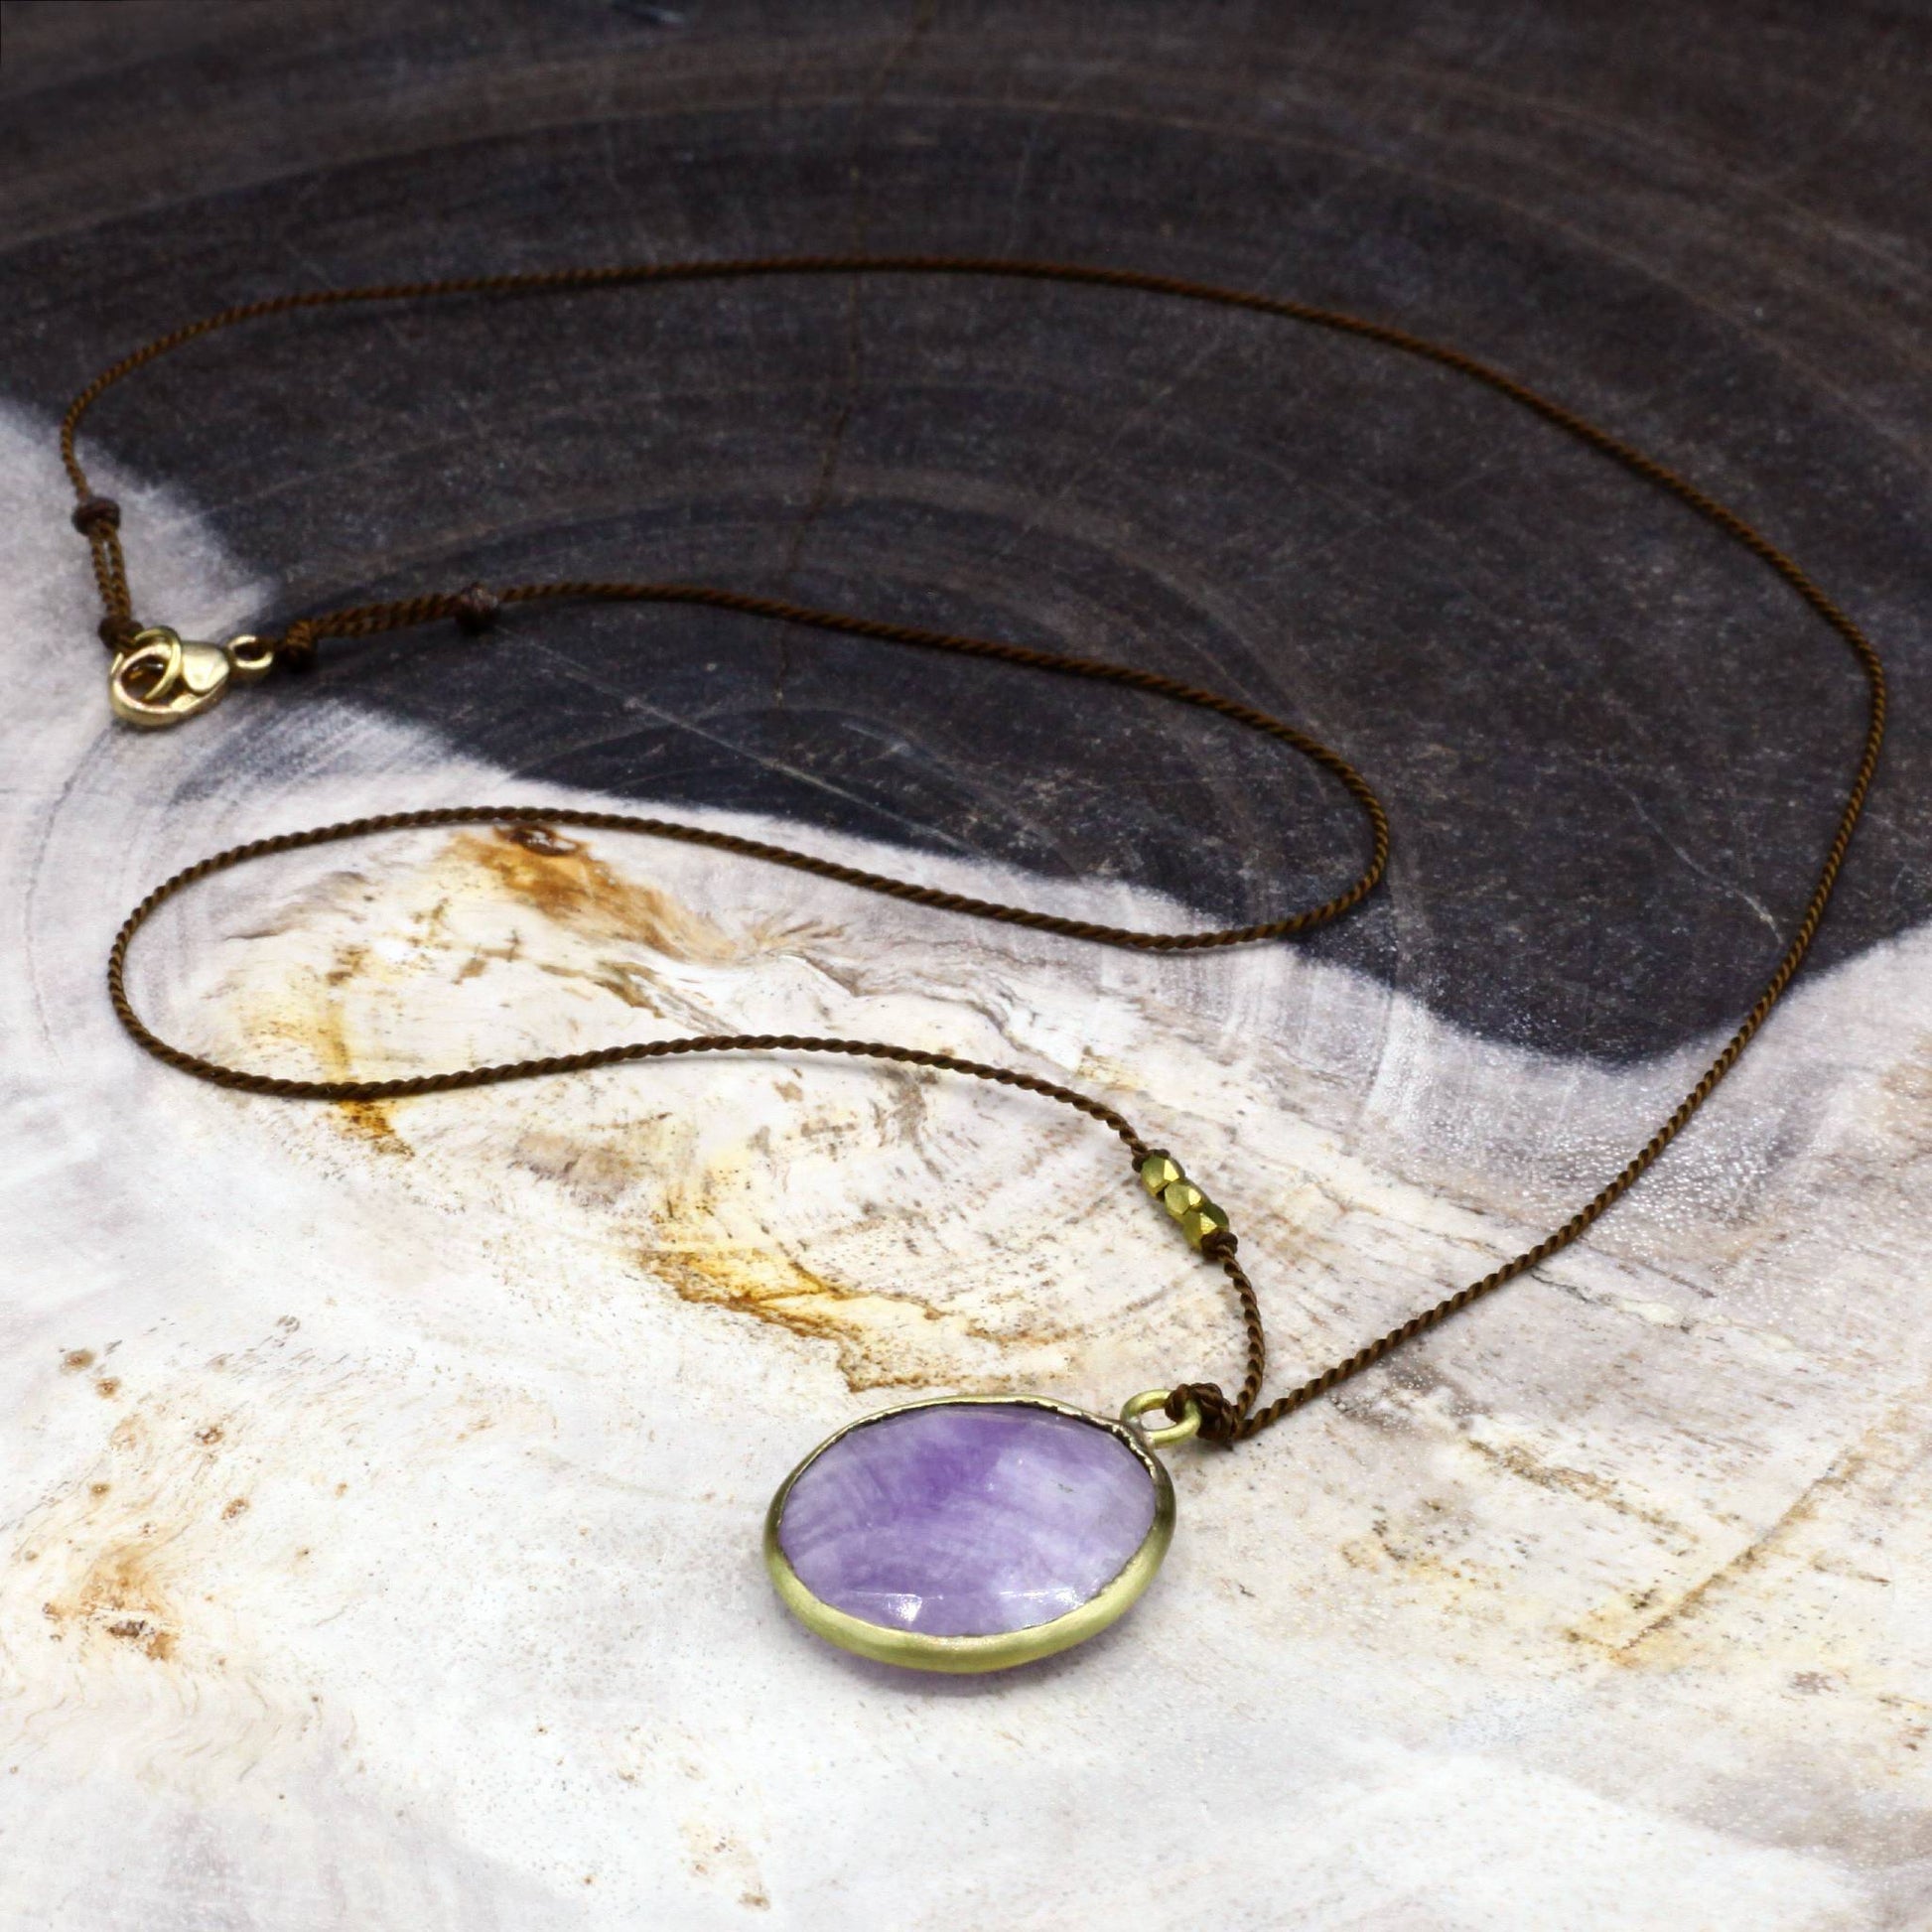 Margaret Solow Jewelry | Lavender Amethyst + Brass Drop Necklace | Firecracker